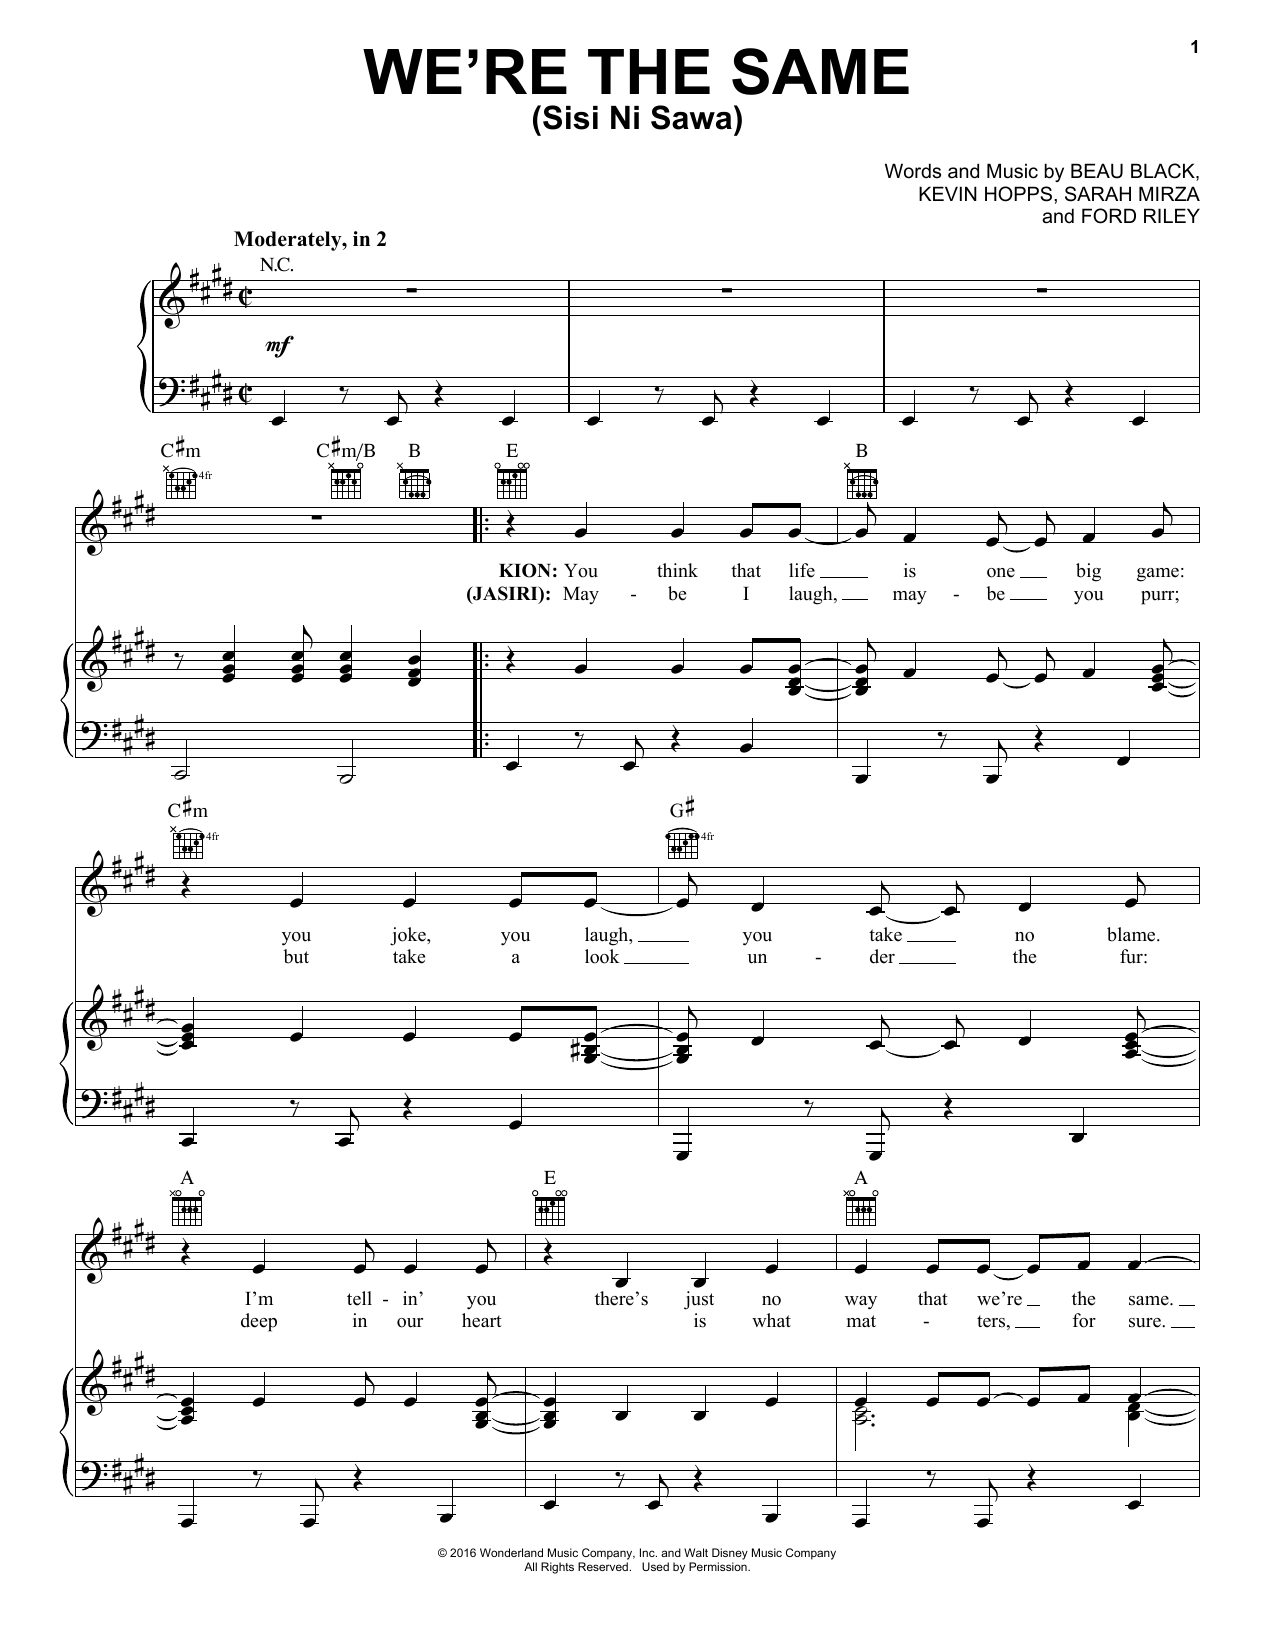 Sarah Mirza We're The Same (Sis Ni Sawa) Sheet Music Notes & Chords for Piano, Vocal & Guitar (Right-Hand Melody) - Download or Print PDF